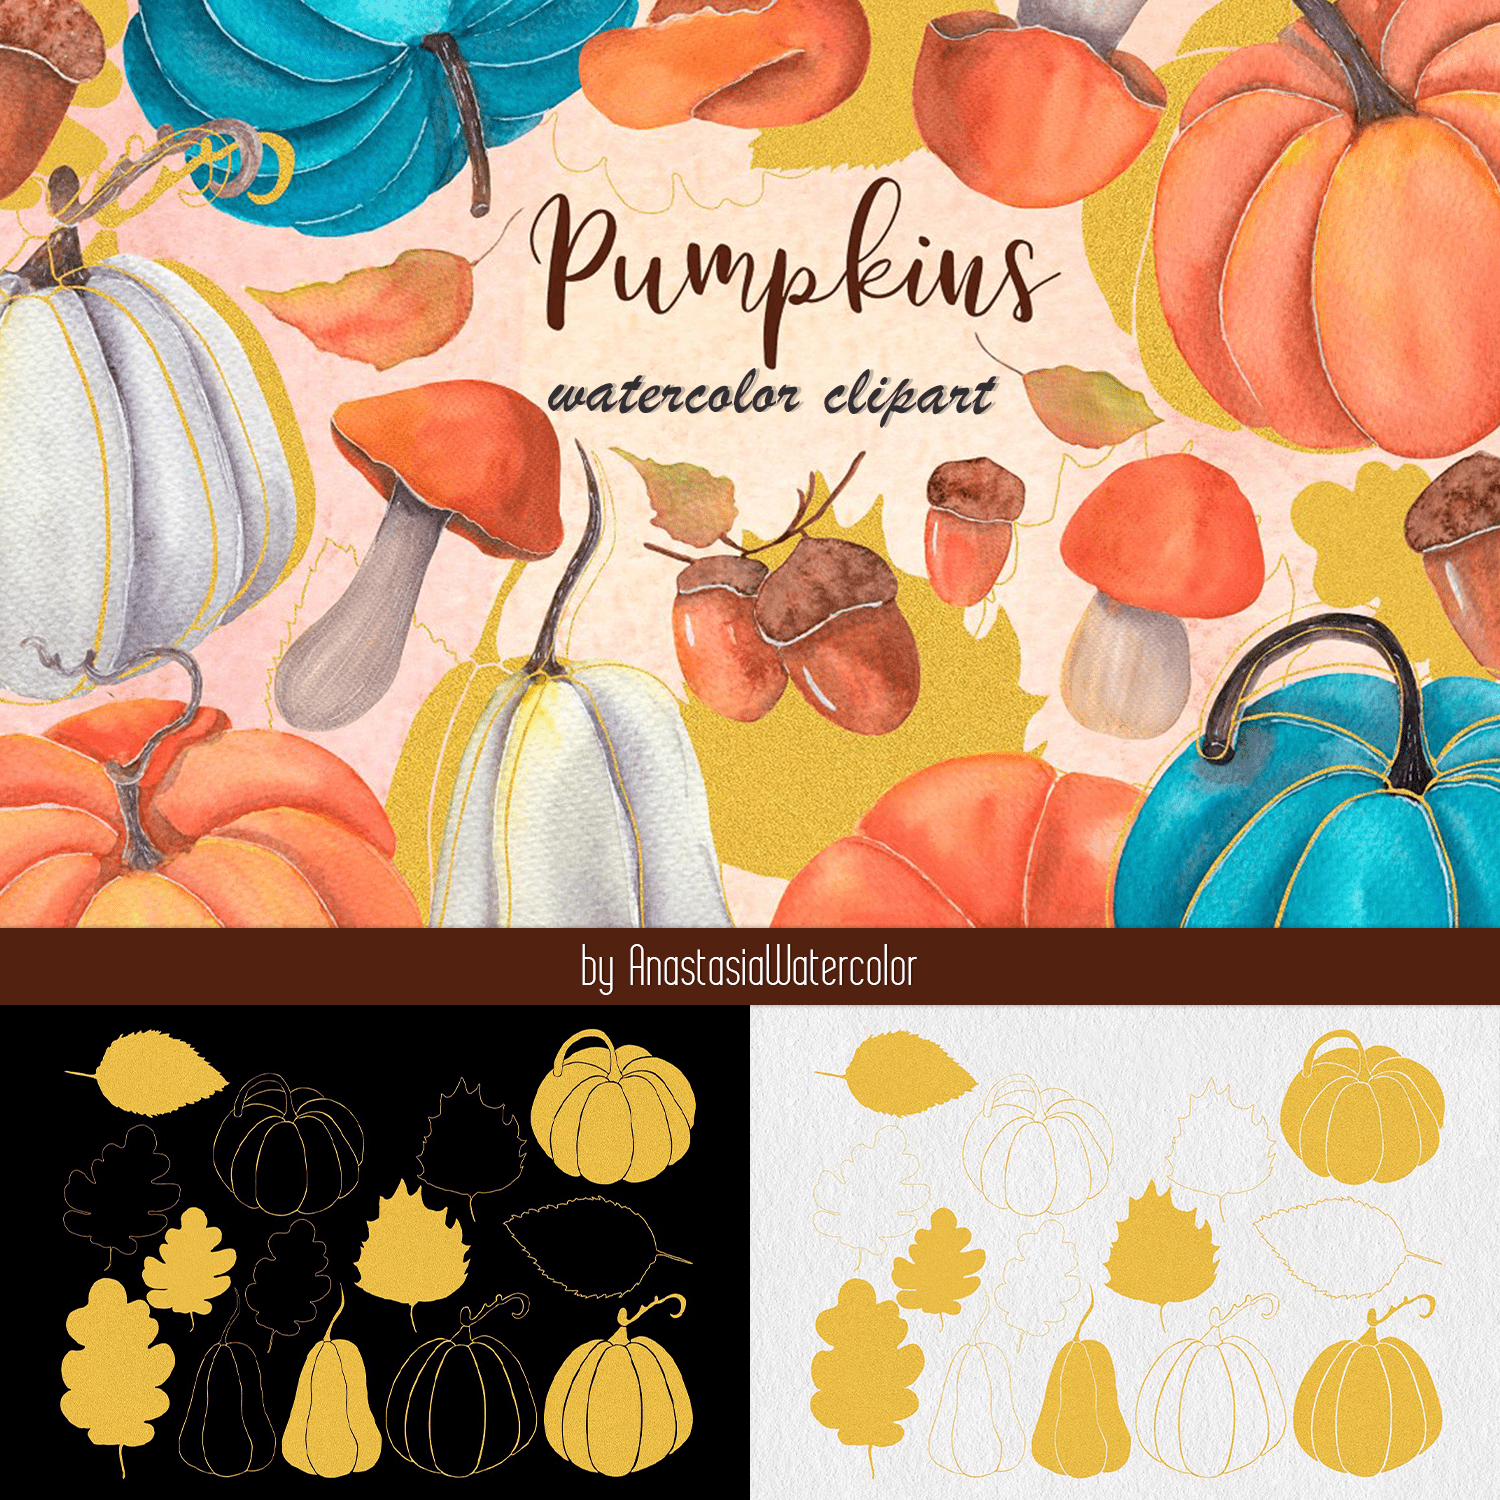 Pumpkins watercolor clipart.